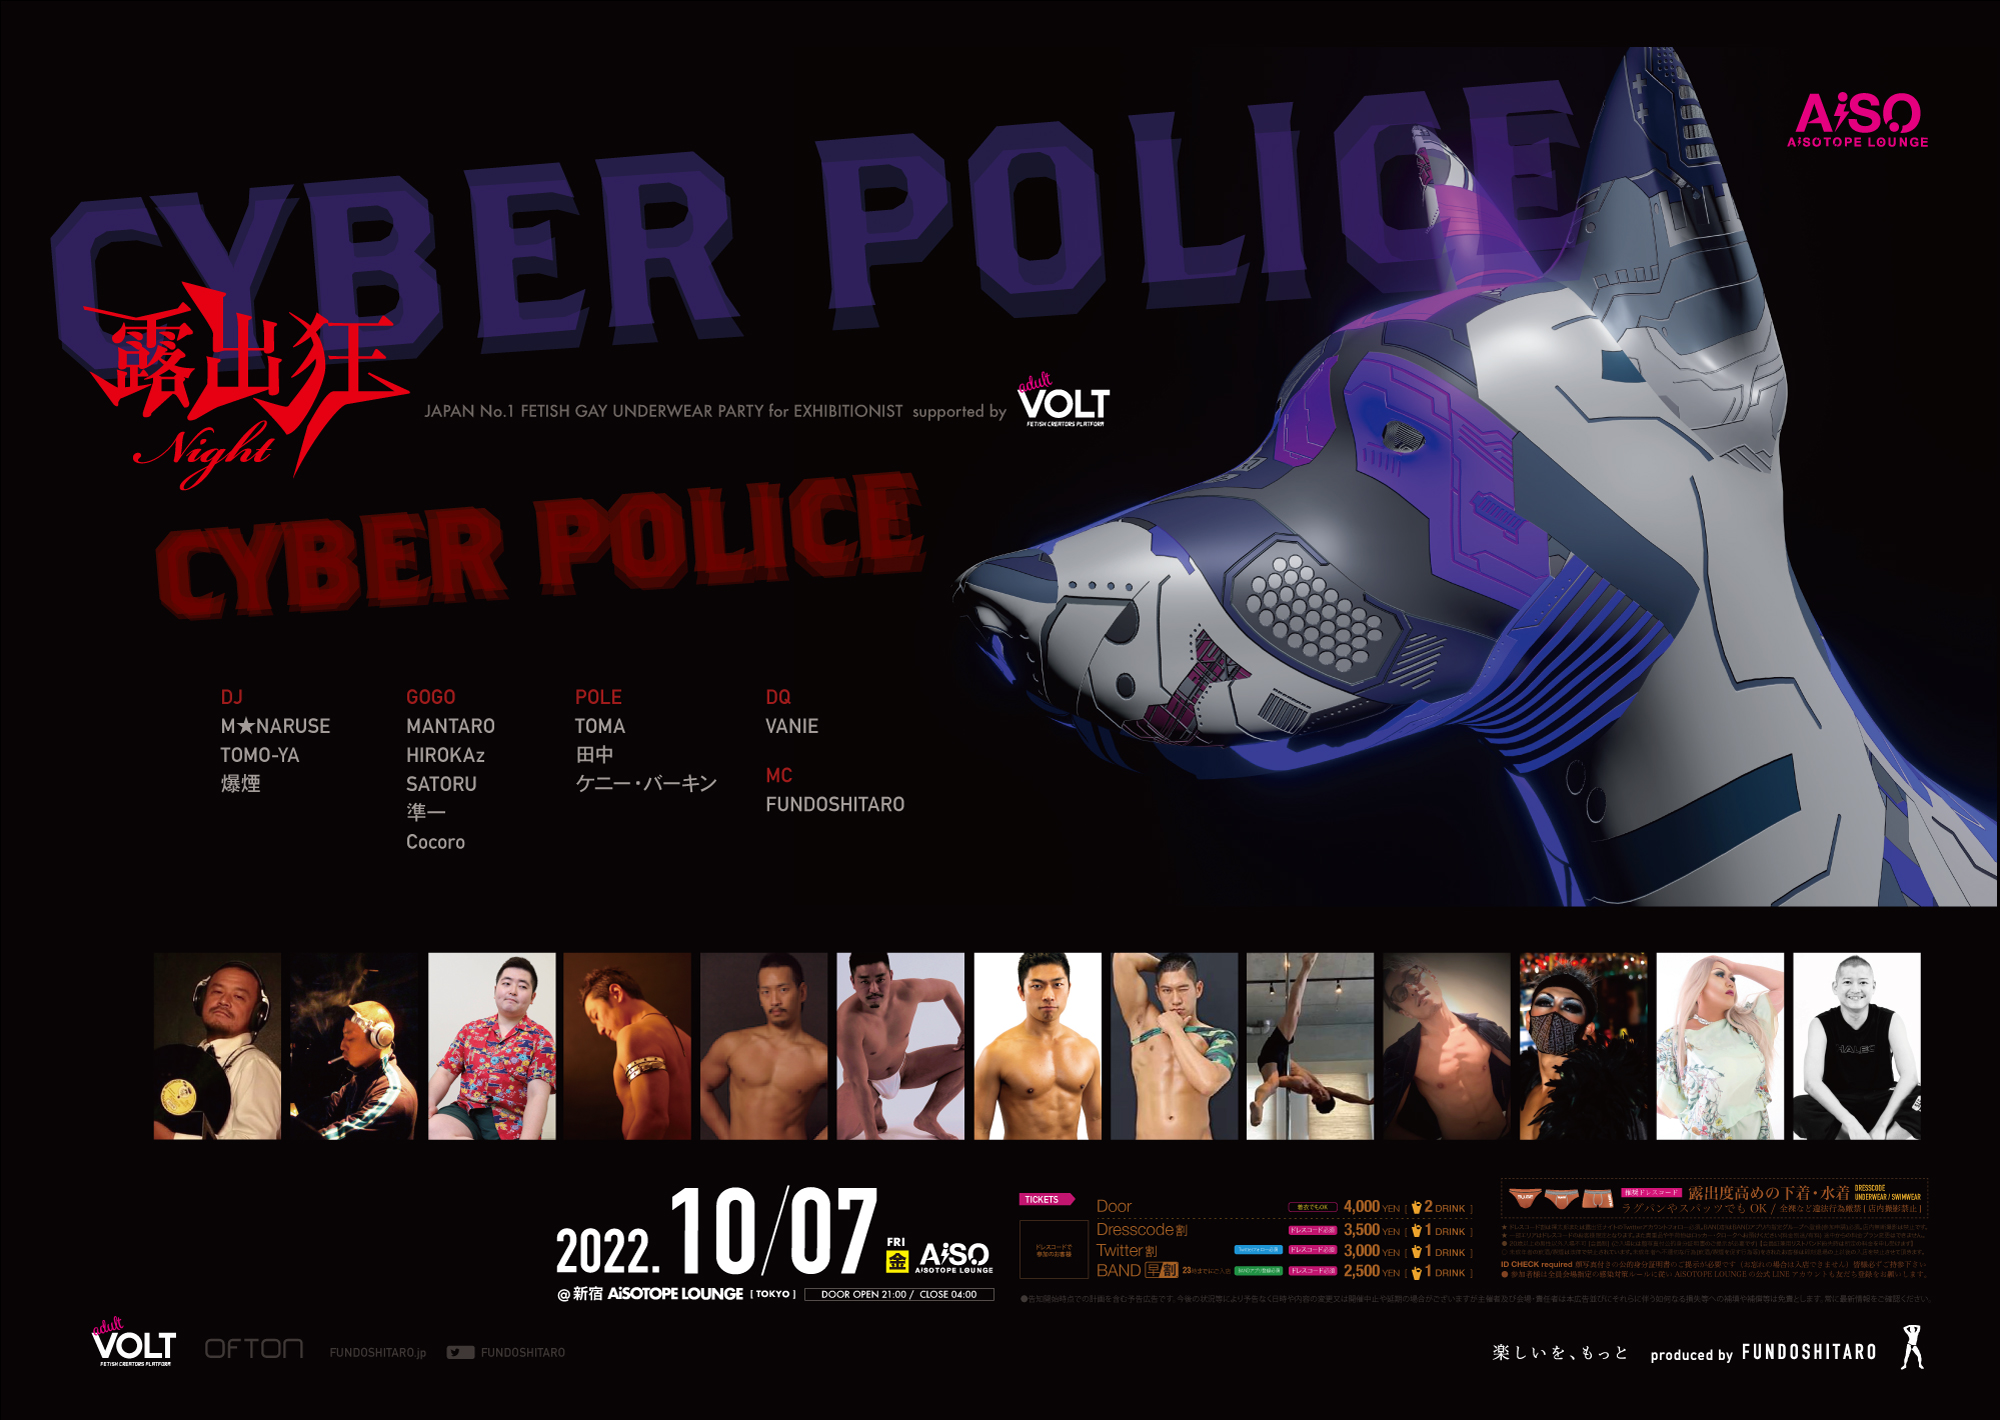 露出狂ナイト CYBER POLICE TOKYO 新宿 AiSOTOPE LOUNGE 2022年10月7日(金) 褌太郎 produced by FUNDOSHITARO